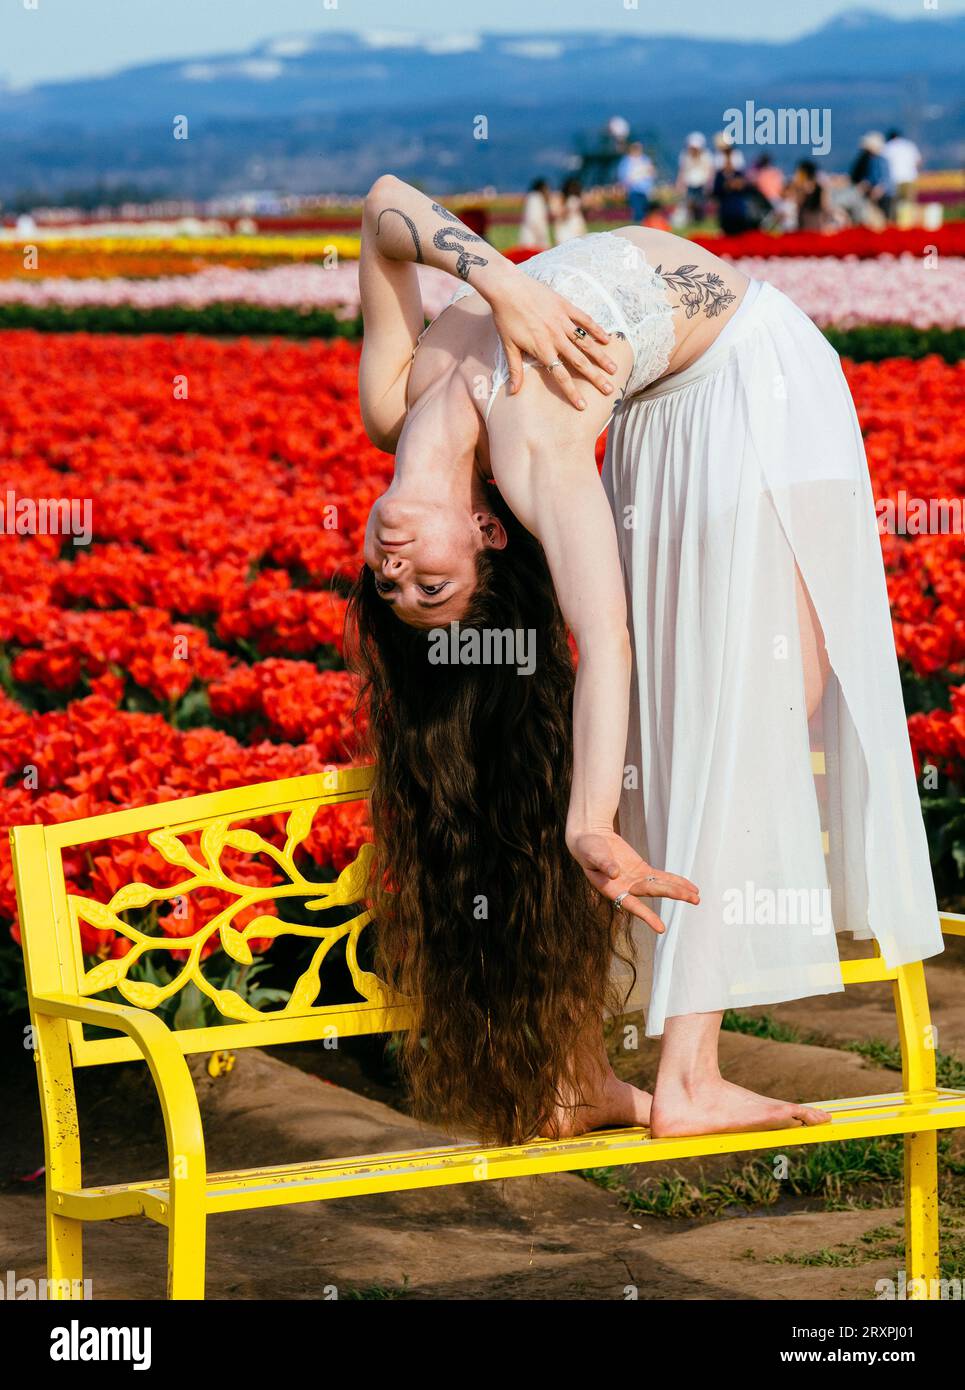 Brune aux cheveux longs se penchant vers l'arrière sur un banc devant un champ de tulipes Banque D'Images